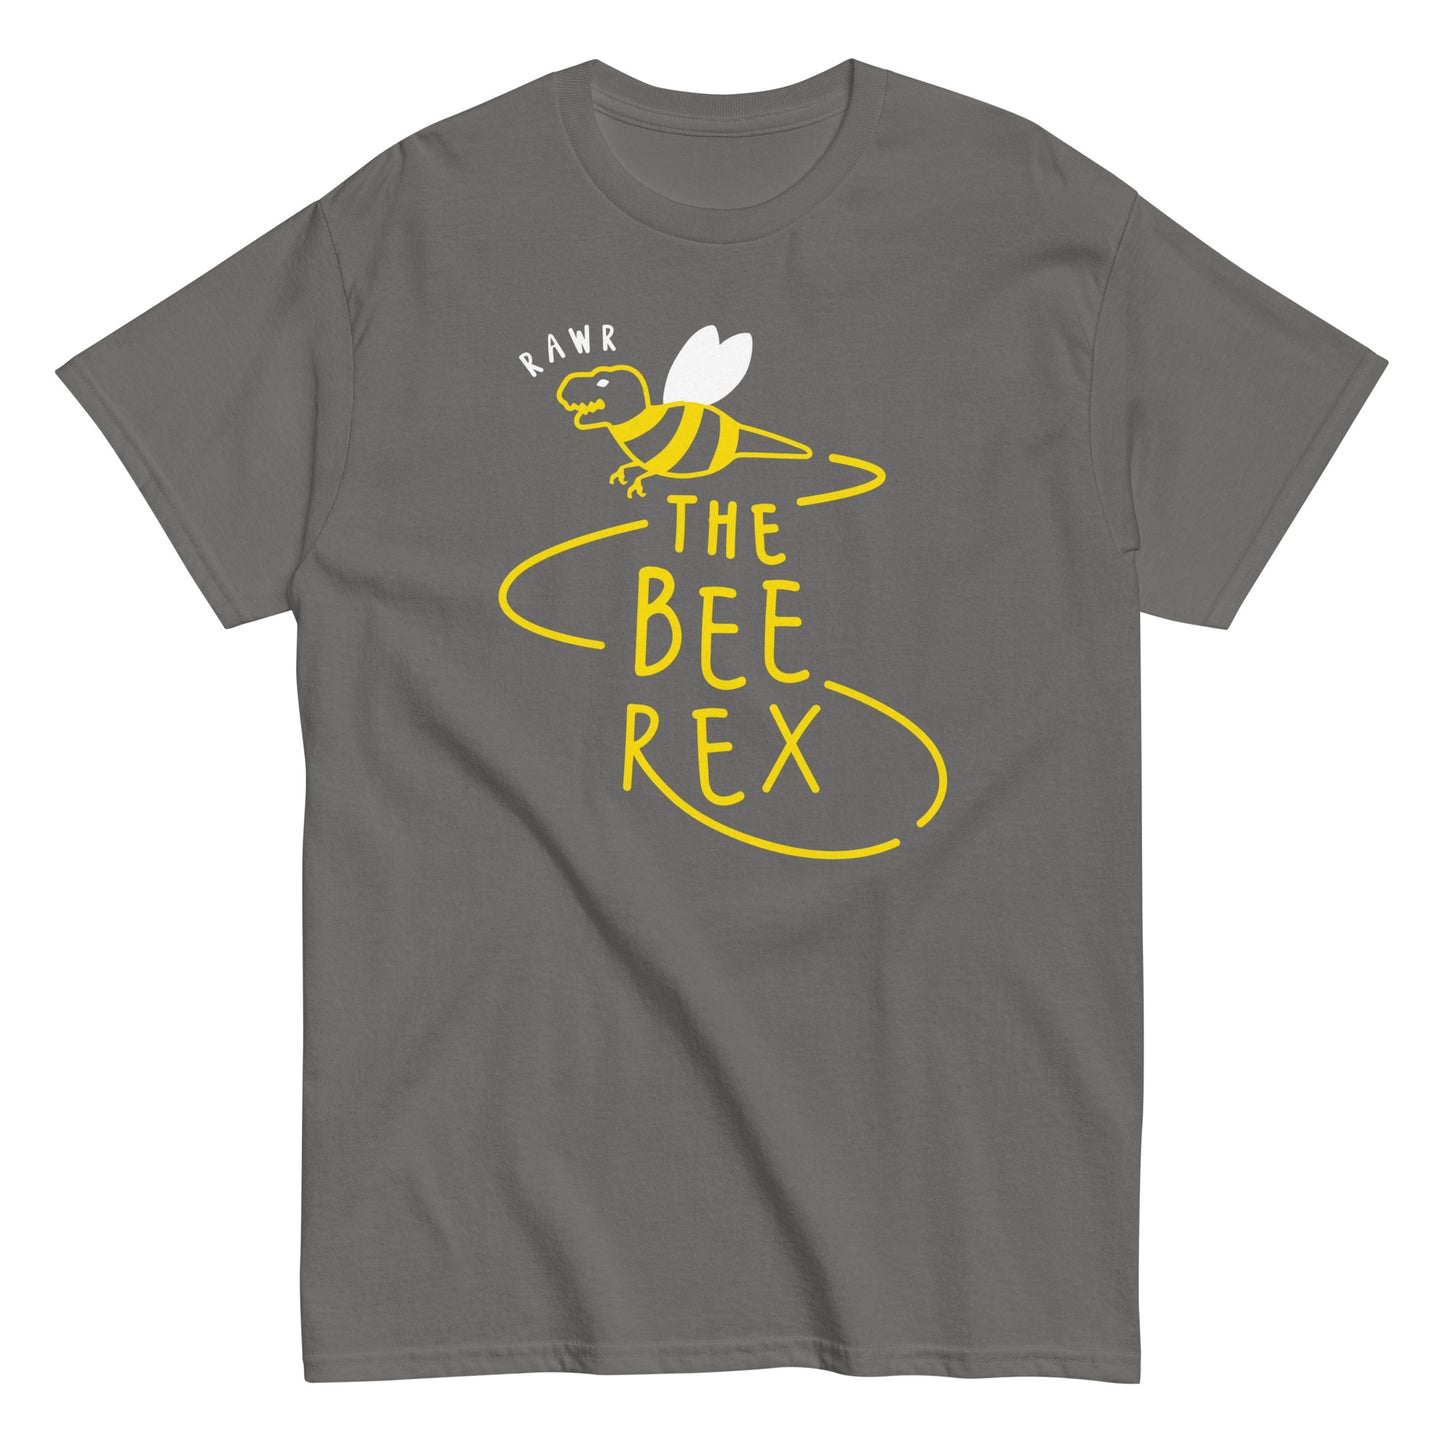 The Bee Rex Men's Classic Tee